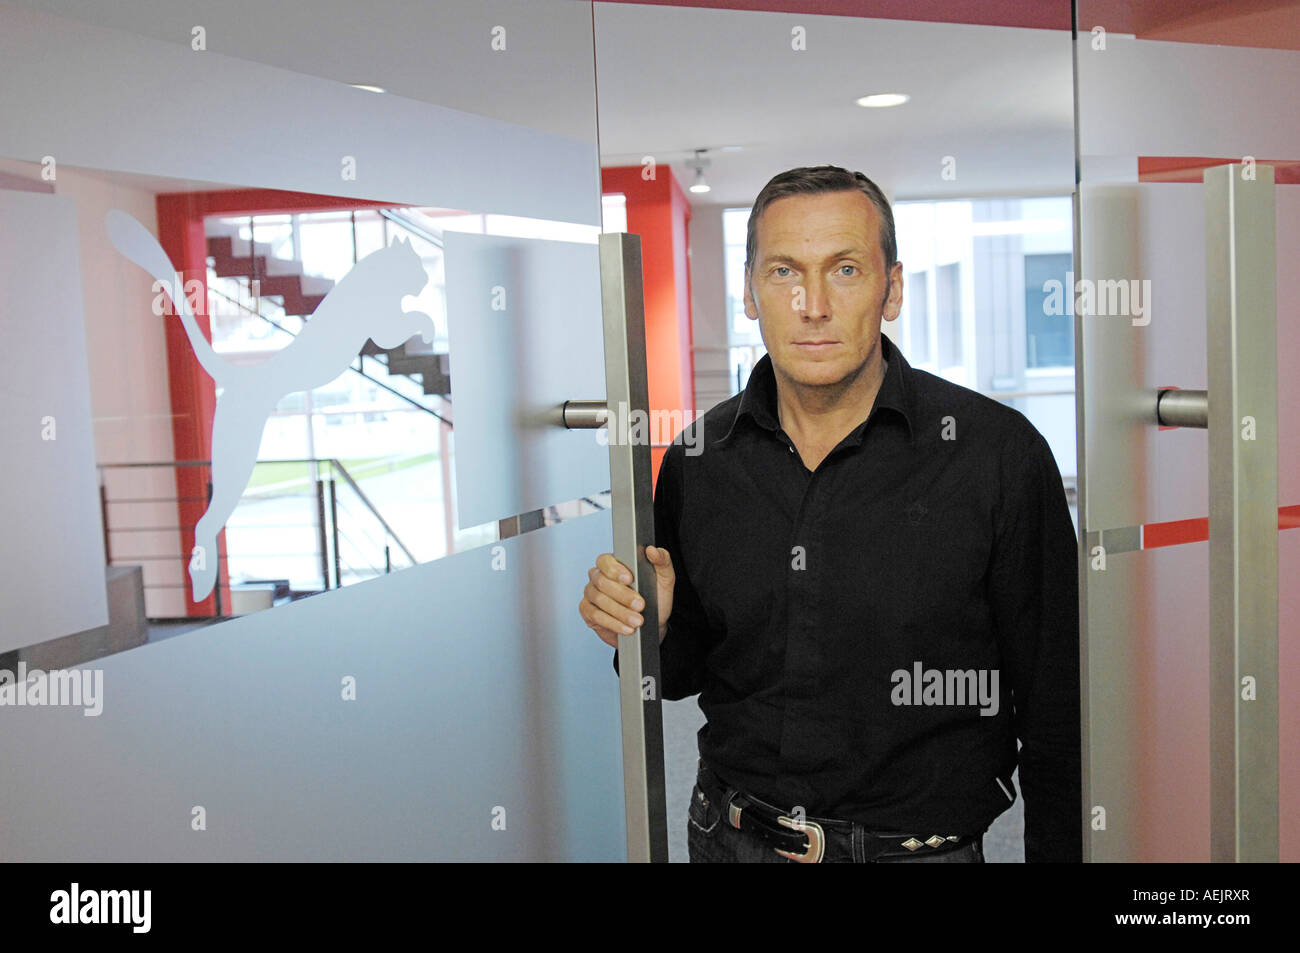 PUMA AG Rudolf Dassler Sport, Herzogenaurach - Interview Jochen Zeitz, CEO  Stock Photo - Alamy